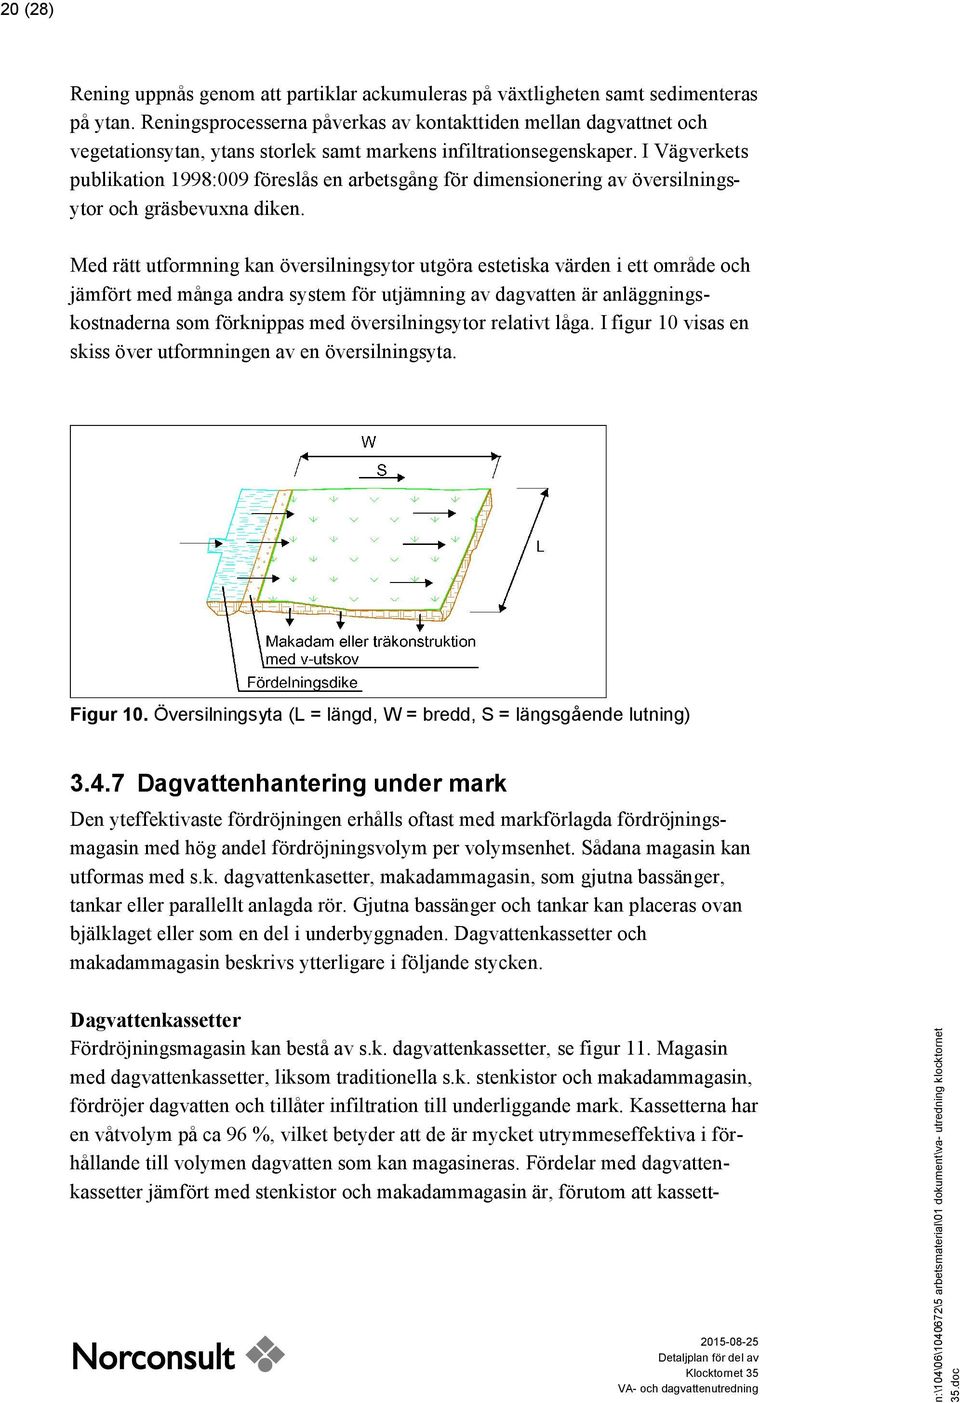 I Vägverkets publikation 1998:009 föreslås en arbetsgång för dimensionering av översilningsytor och gräsbevuxna diken.